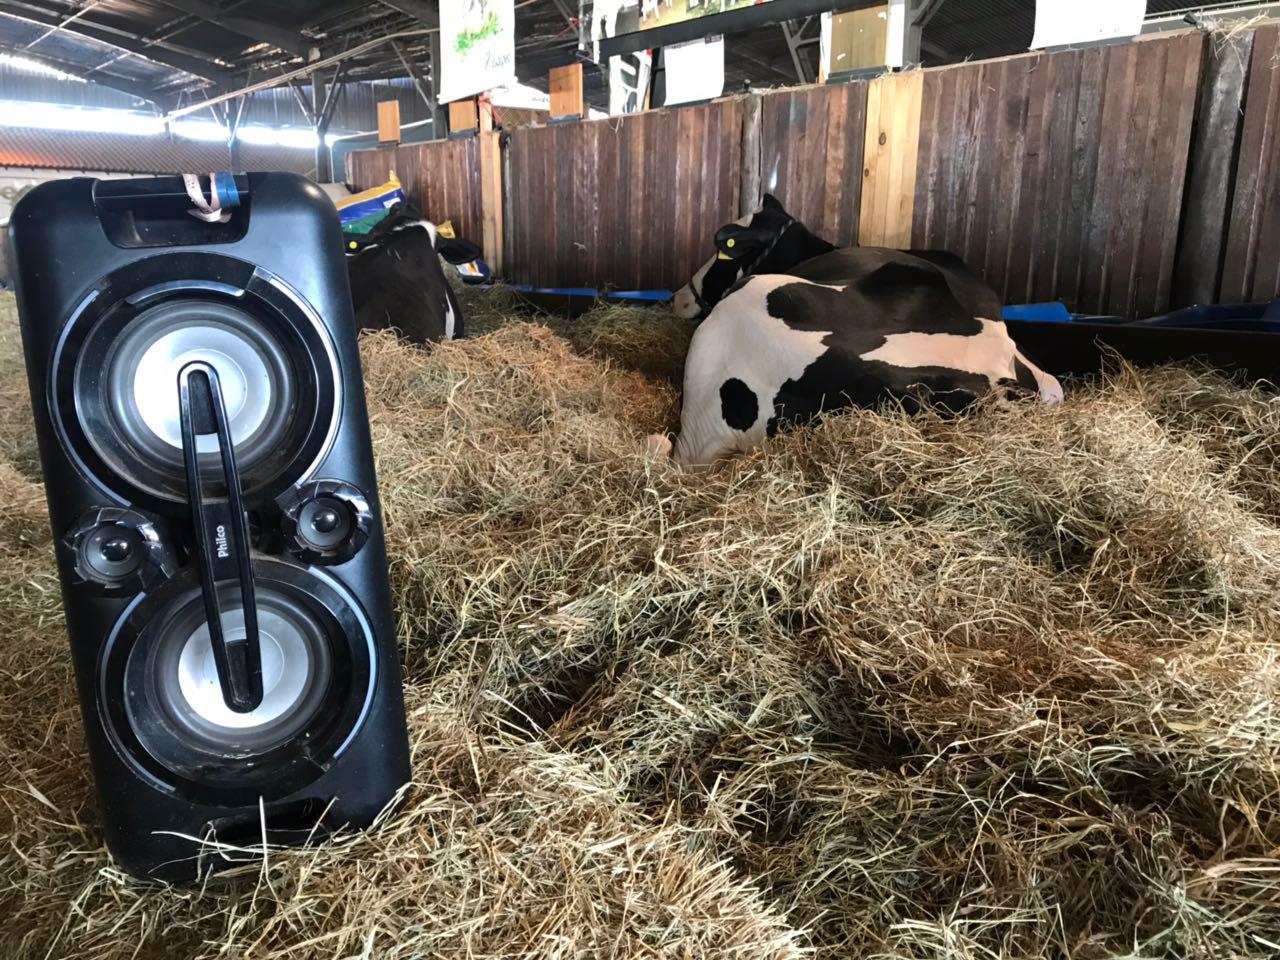 vaca deitada próxima à caixa de som